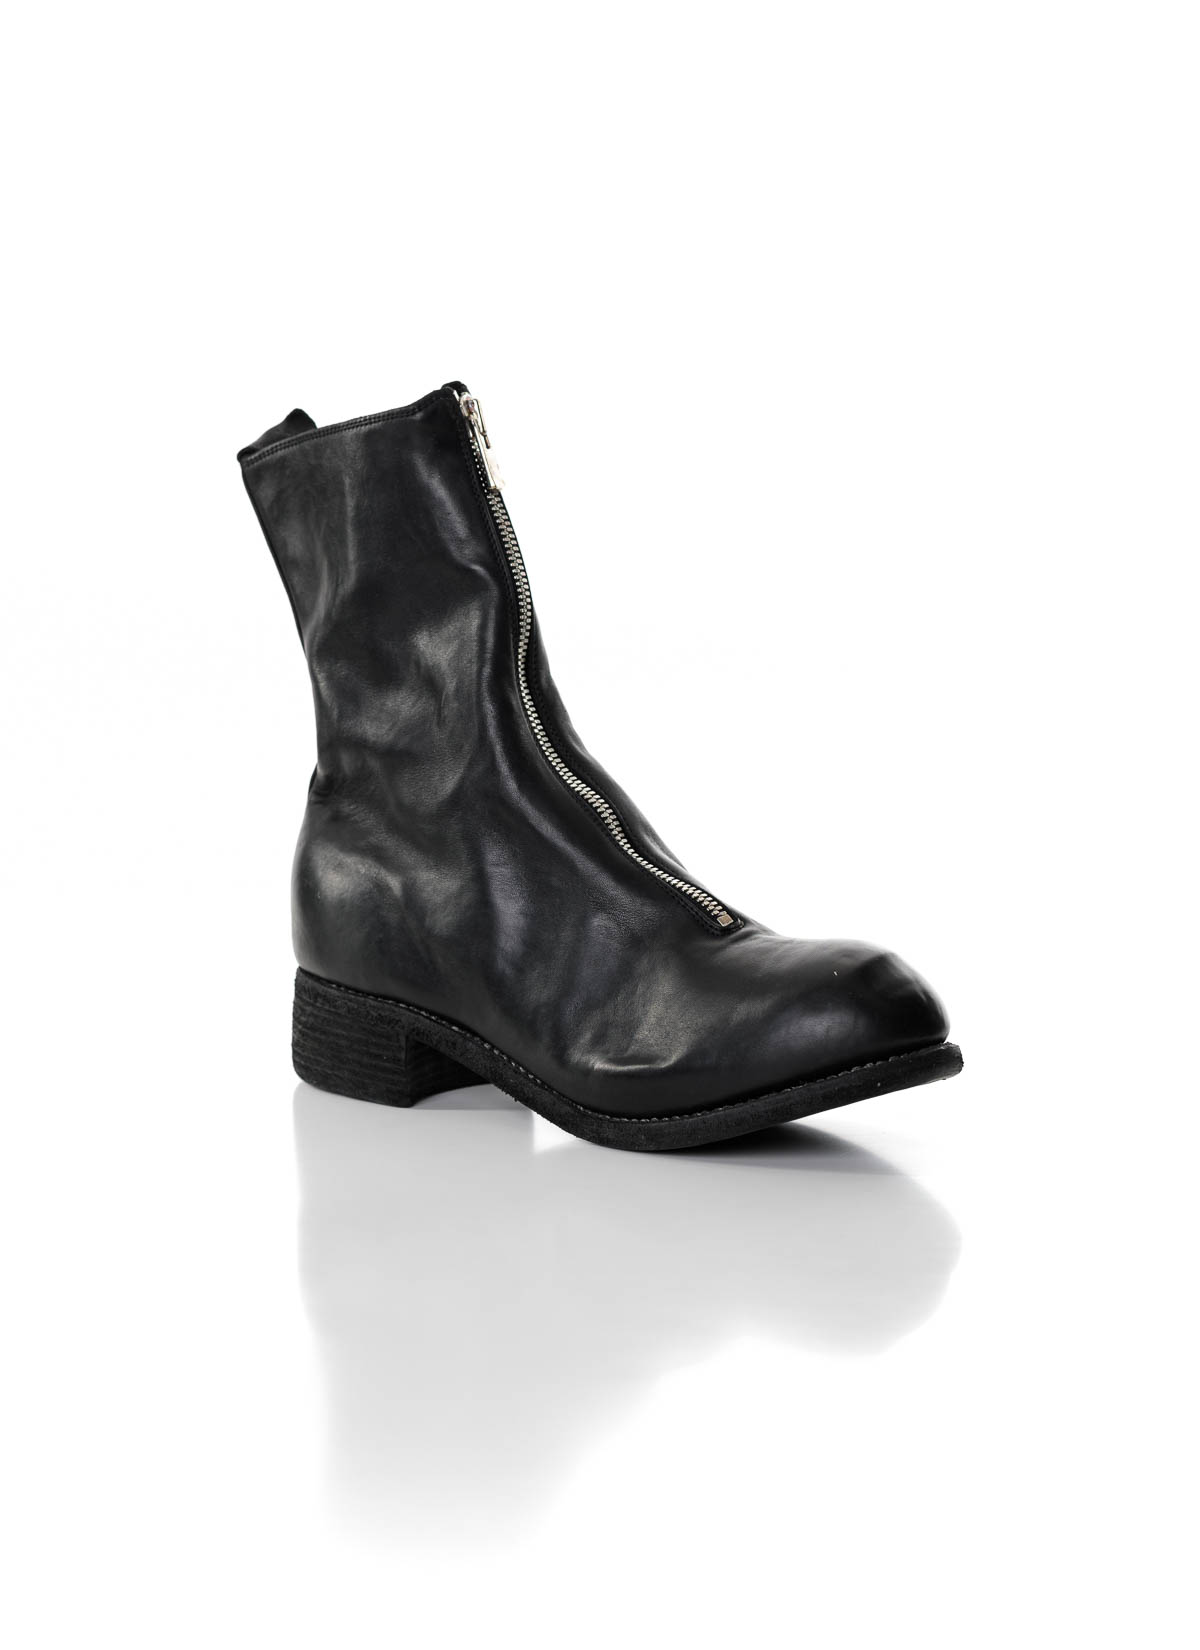 hide-m | GUIDI Men PL2 Front Zip Boot, black horse leather